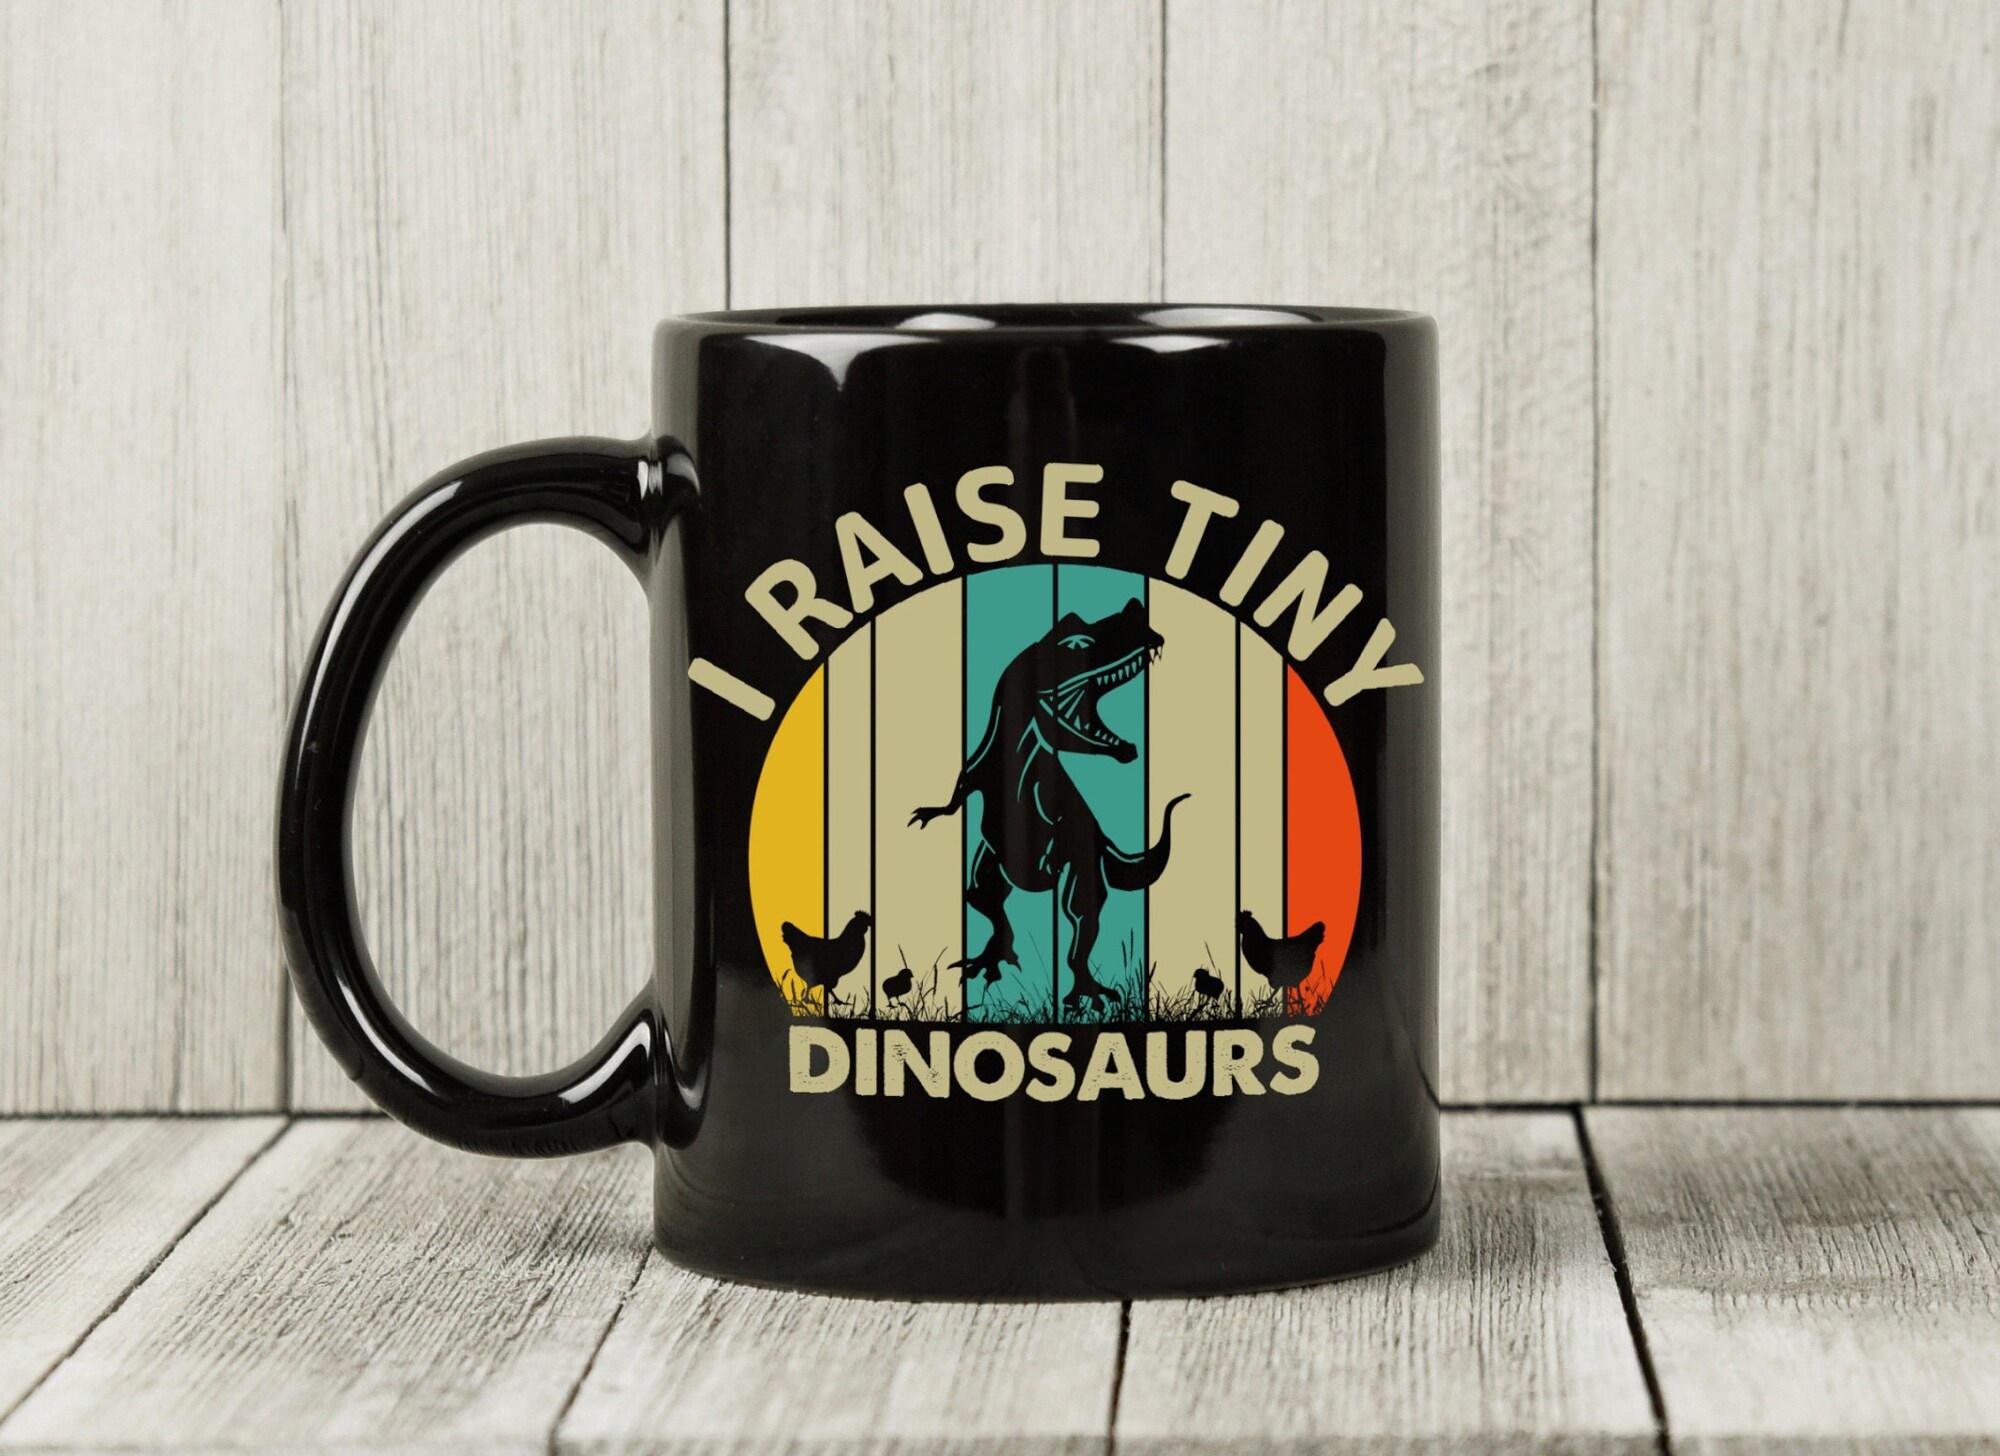 Discover I Raise Tiny Dinosaurs Mug